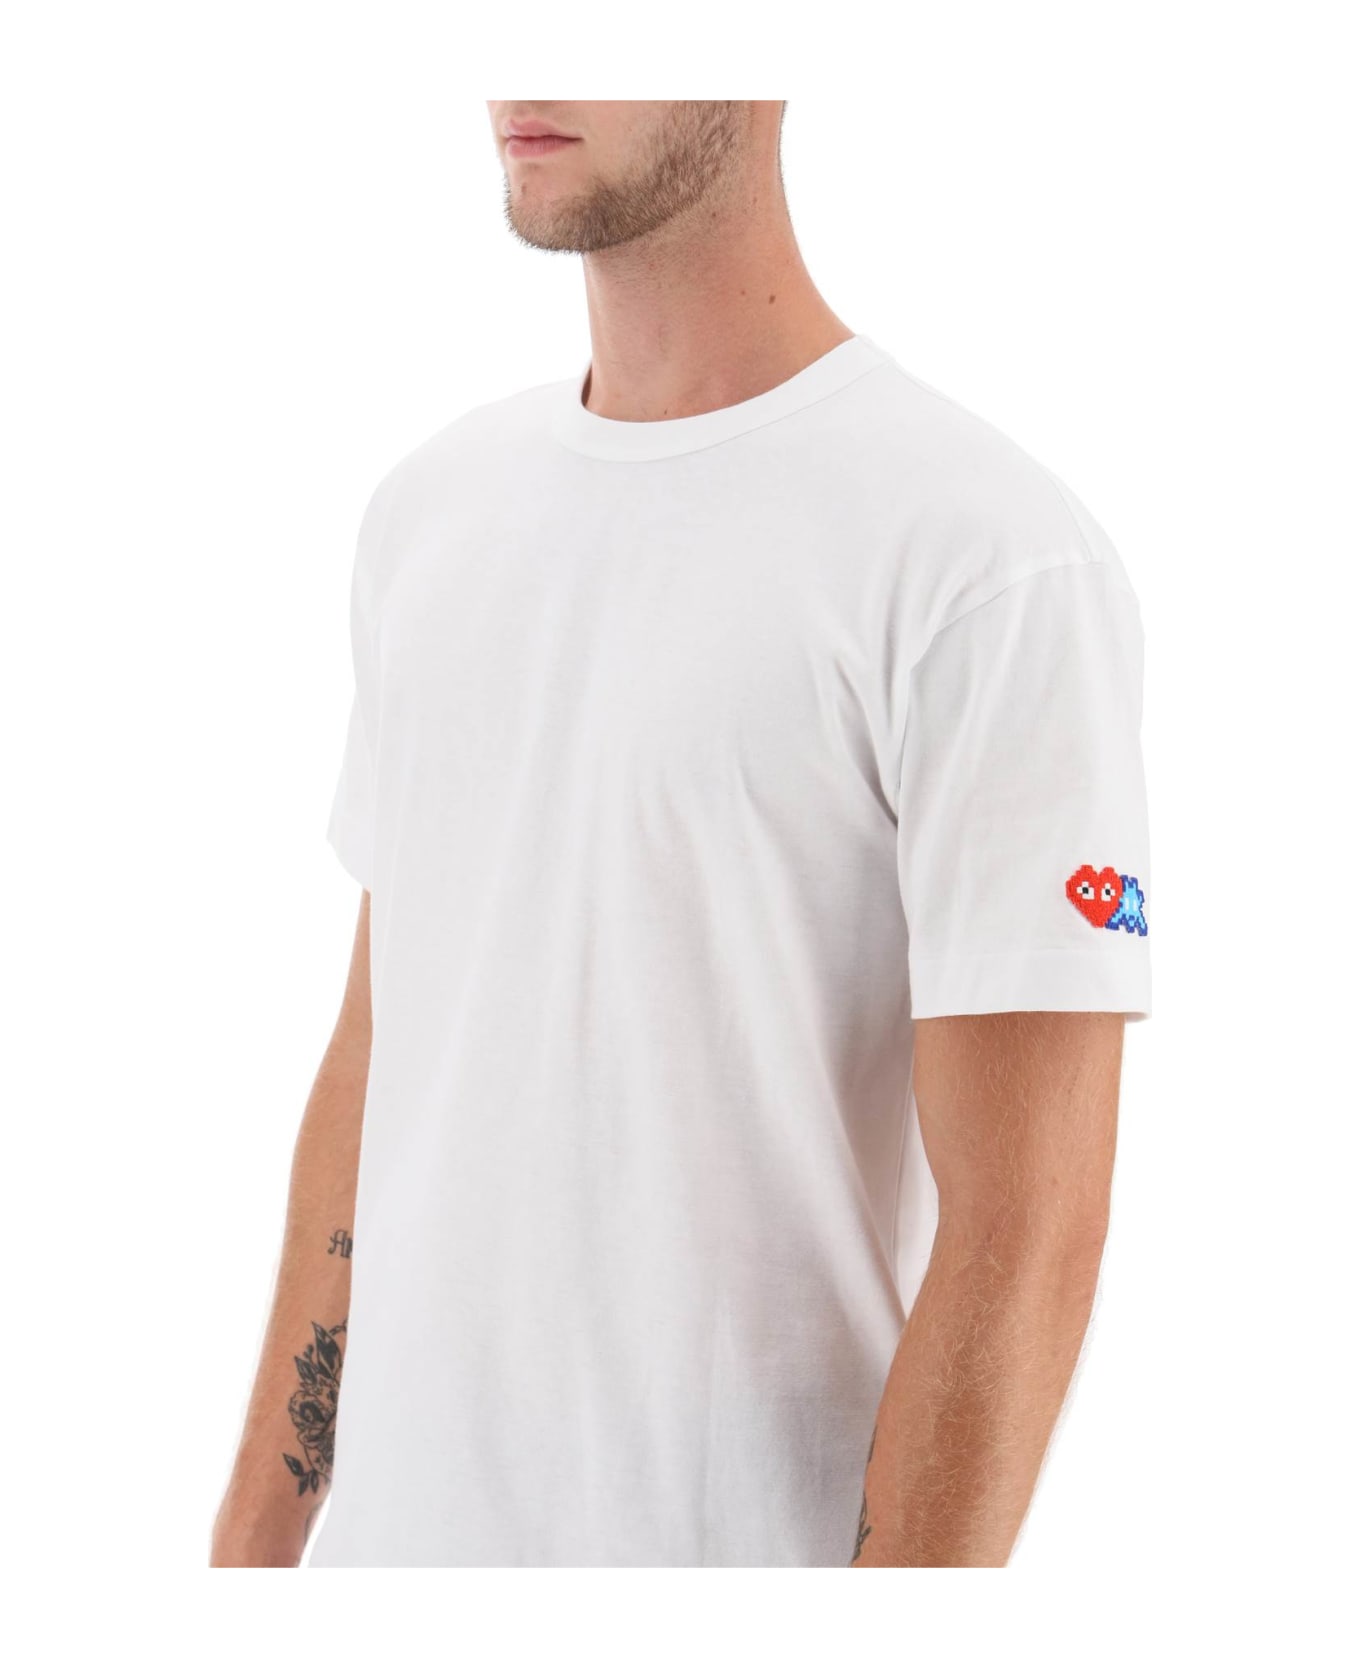 Comme des Garçons Shirt Boy T-shirt With Pixel Patch - White シャツ